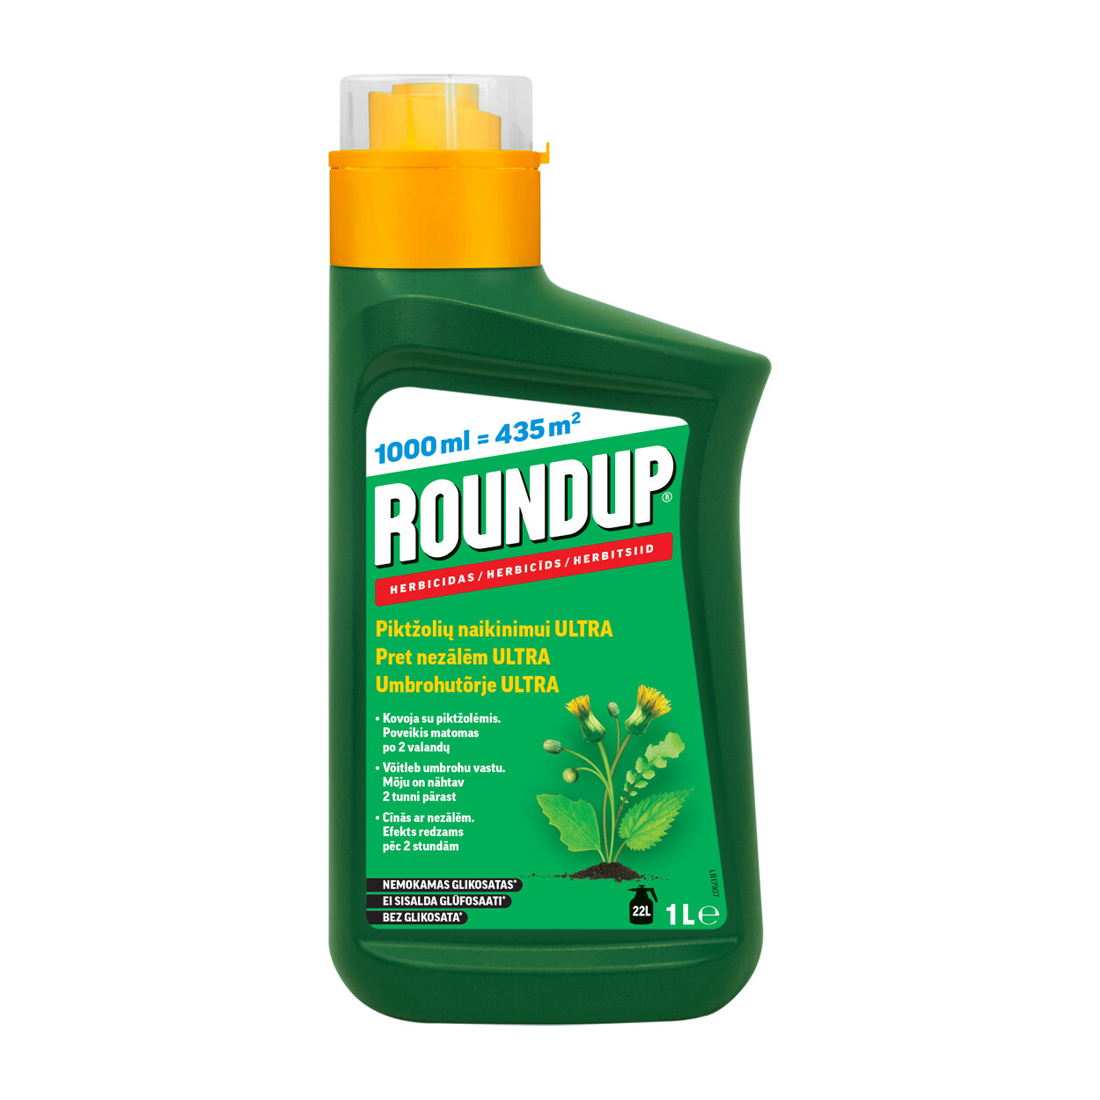 Roundup herbitsiid üheaastaste kaheiduleheliste umbrohtude tõrjumiseks teedel, radadel ja aladel, mis on vett läbilaskva pinnaga ning dekoratiivpuude ja -põõsas